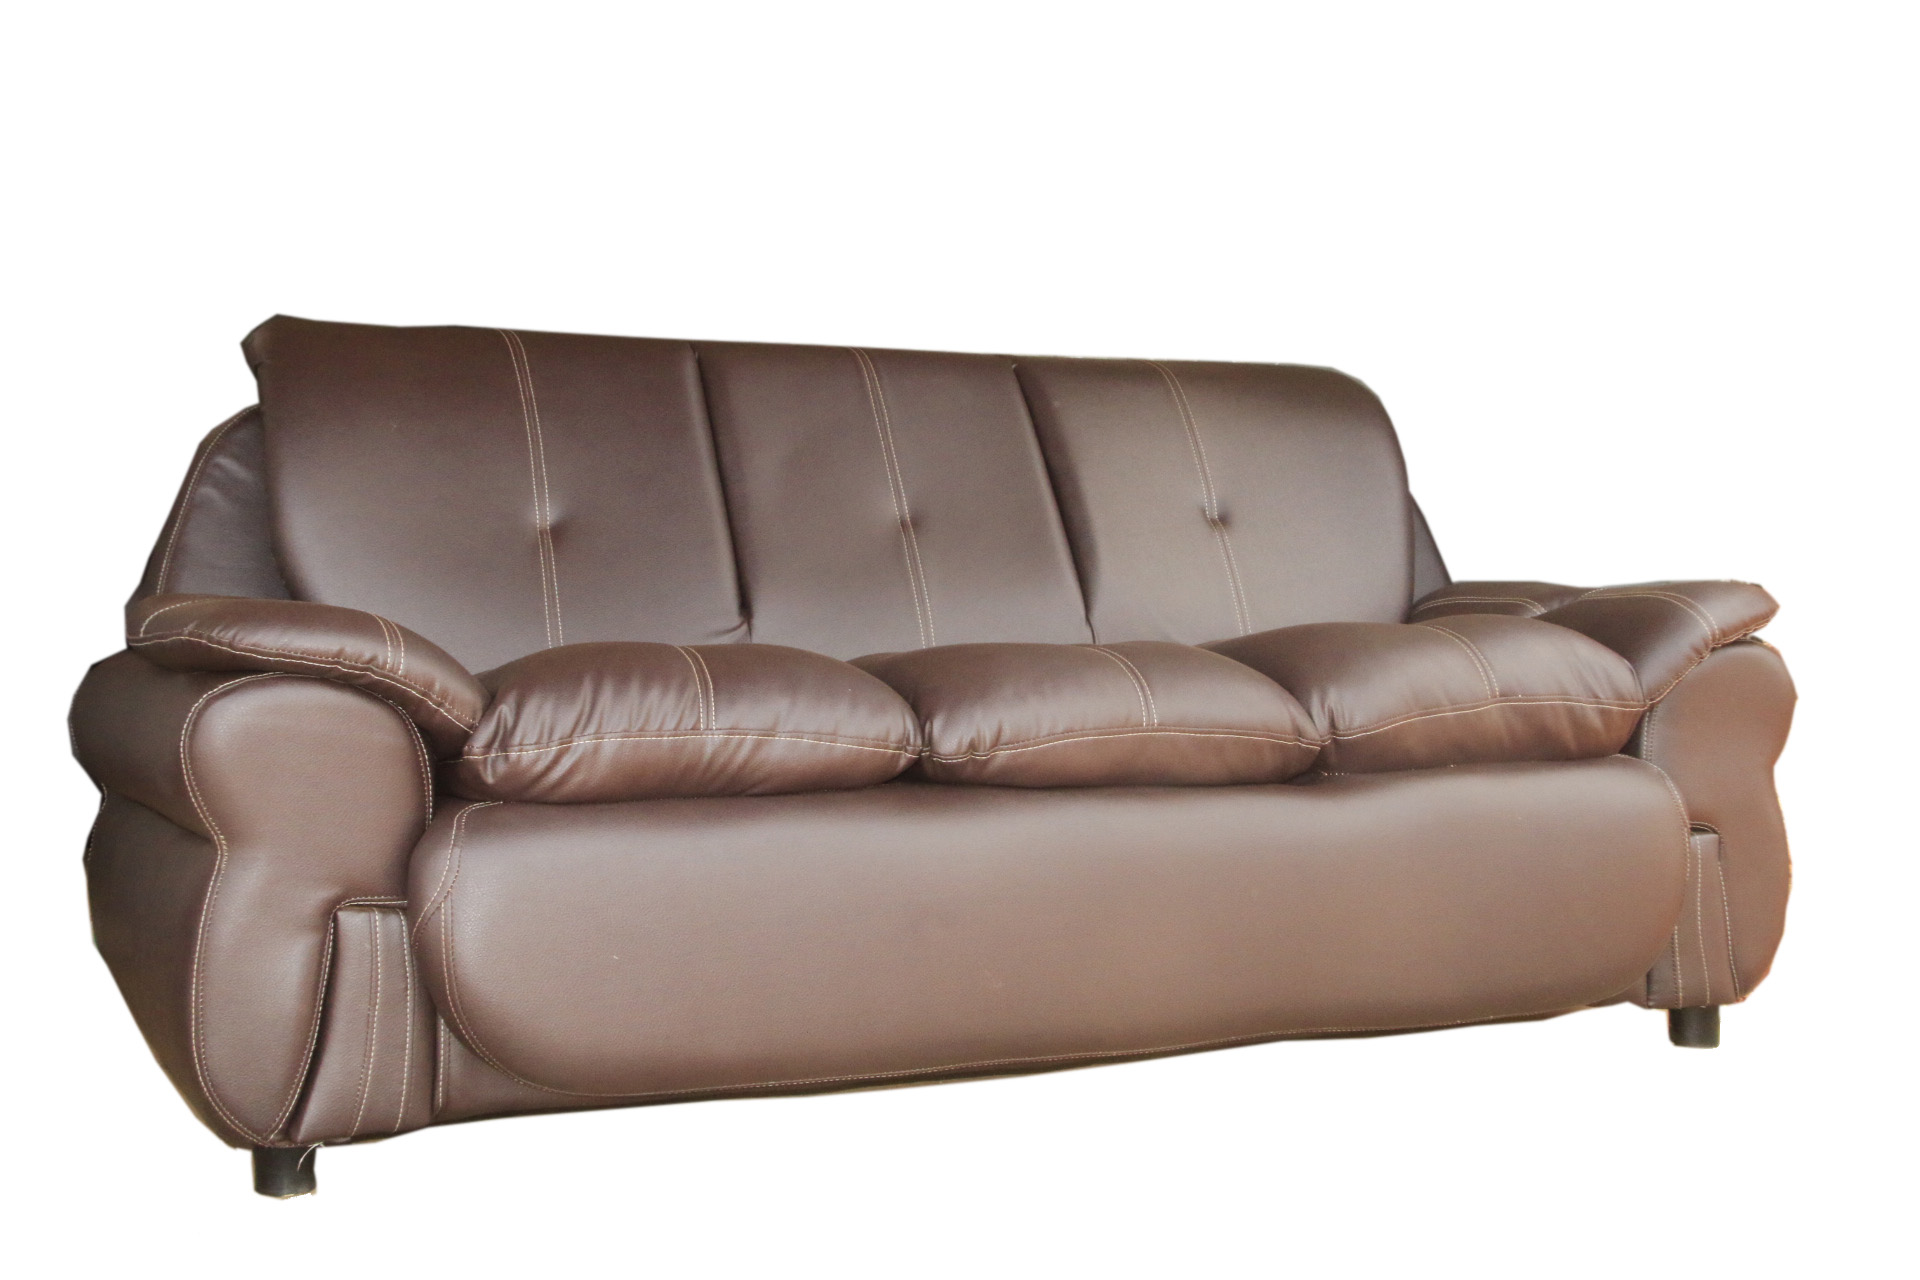 leather sofa for sale in uganda